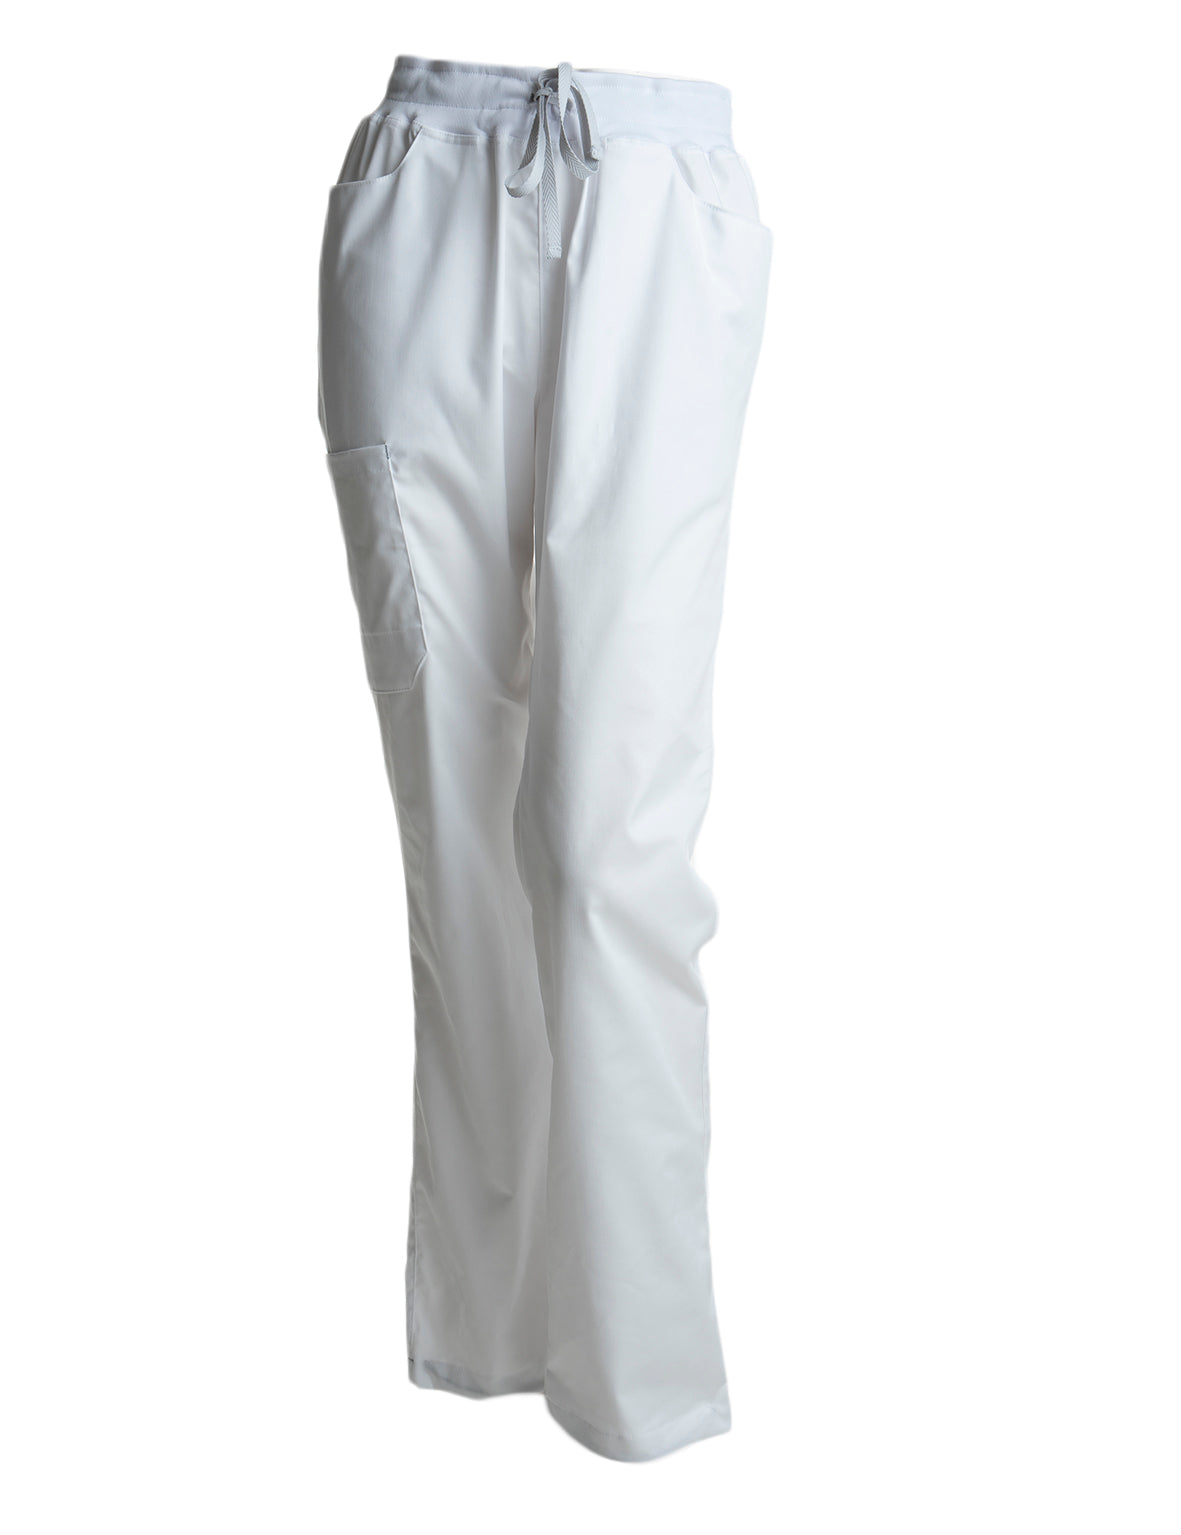 Terveydenhuoltoon valkoiset housut. Viisi taskua, joista kaksi edessä, yksi vasemmassa reidessä ja kaksi takana. 